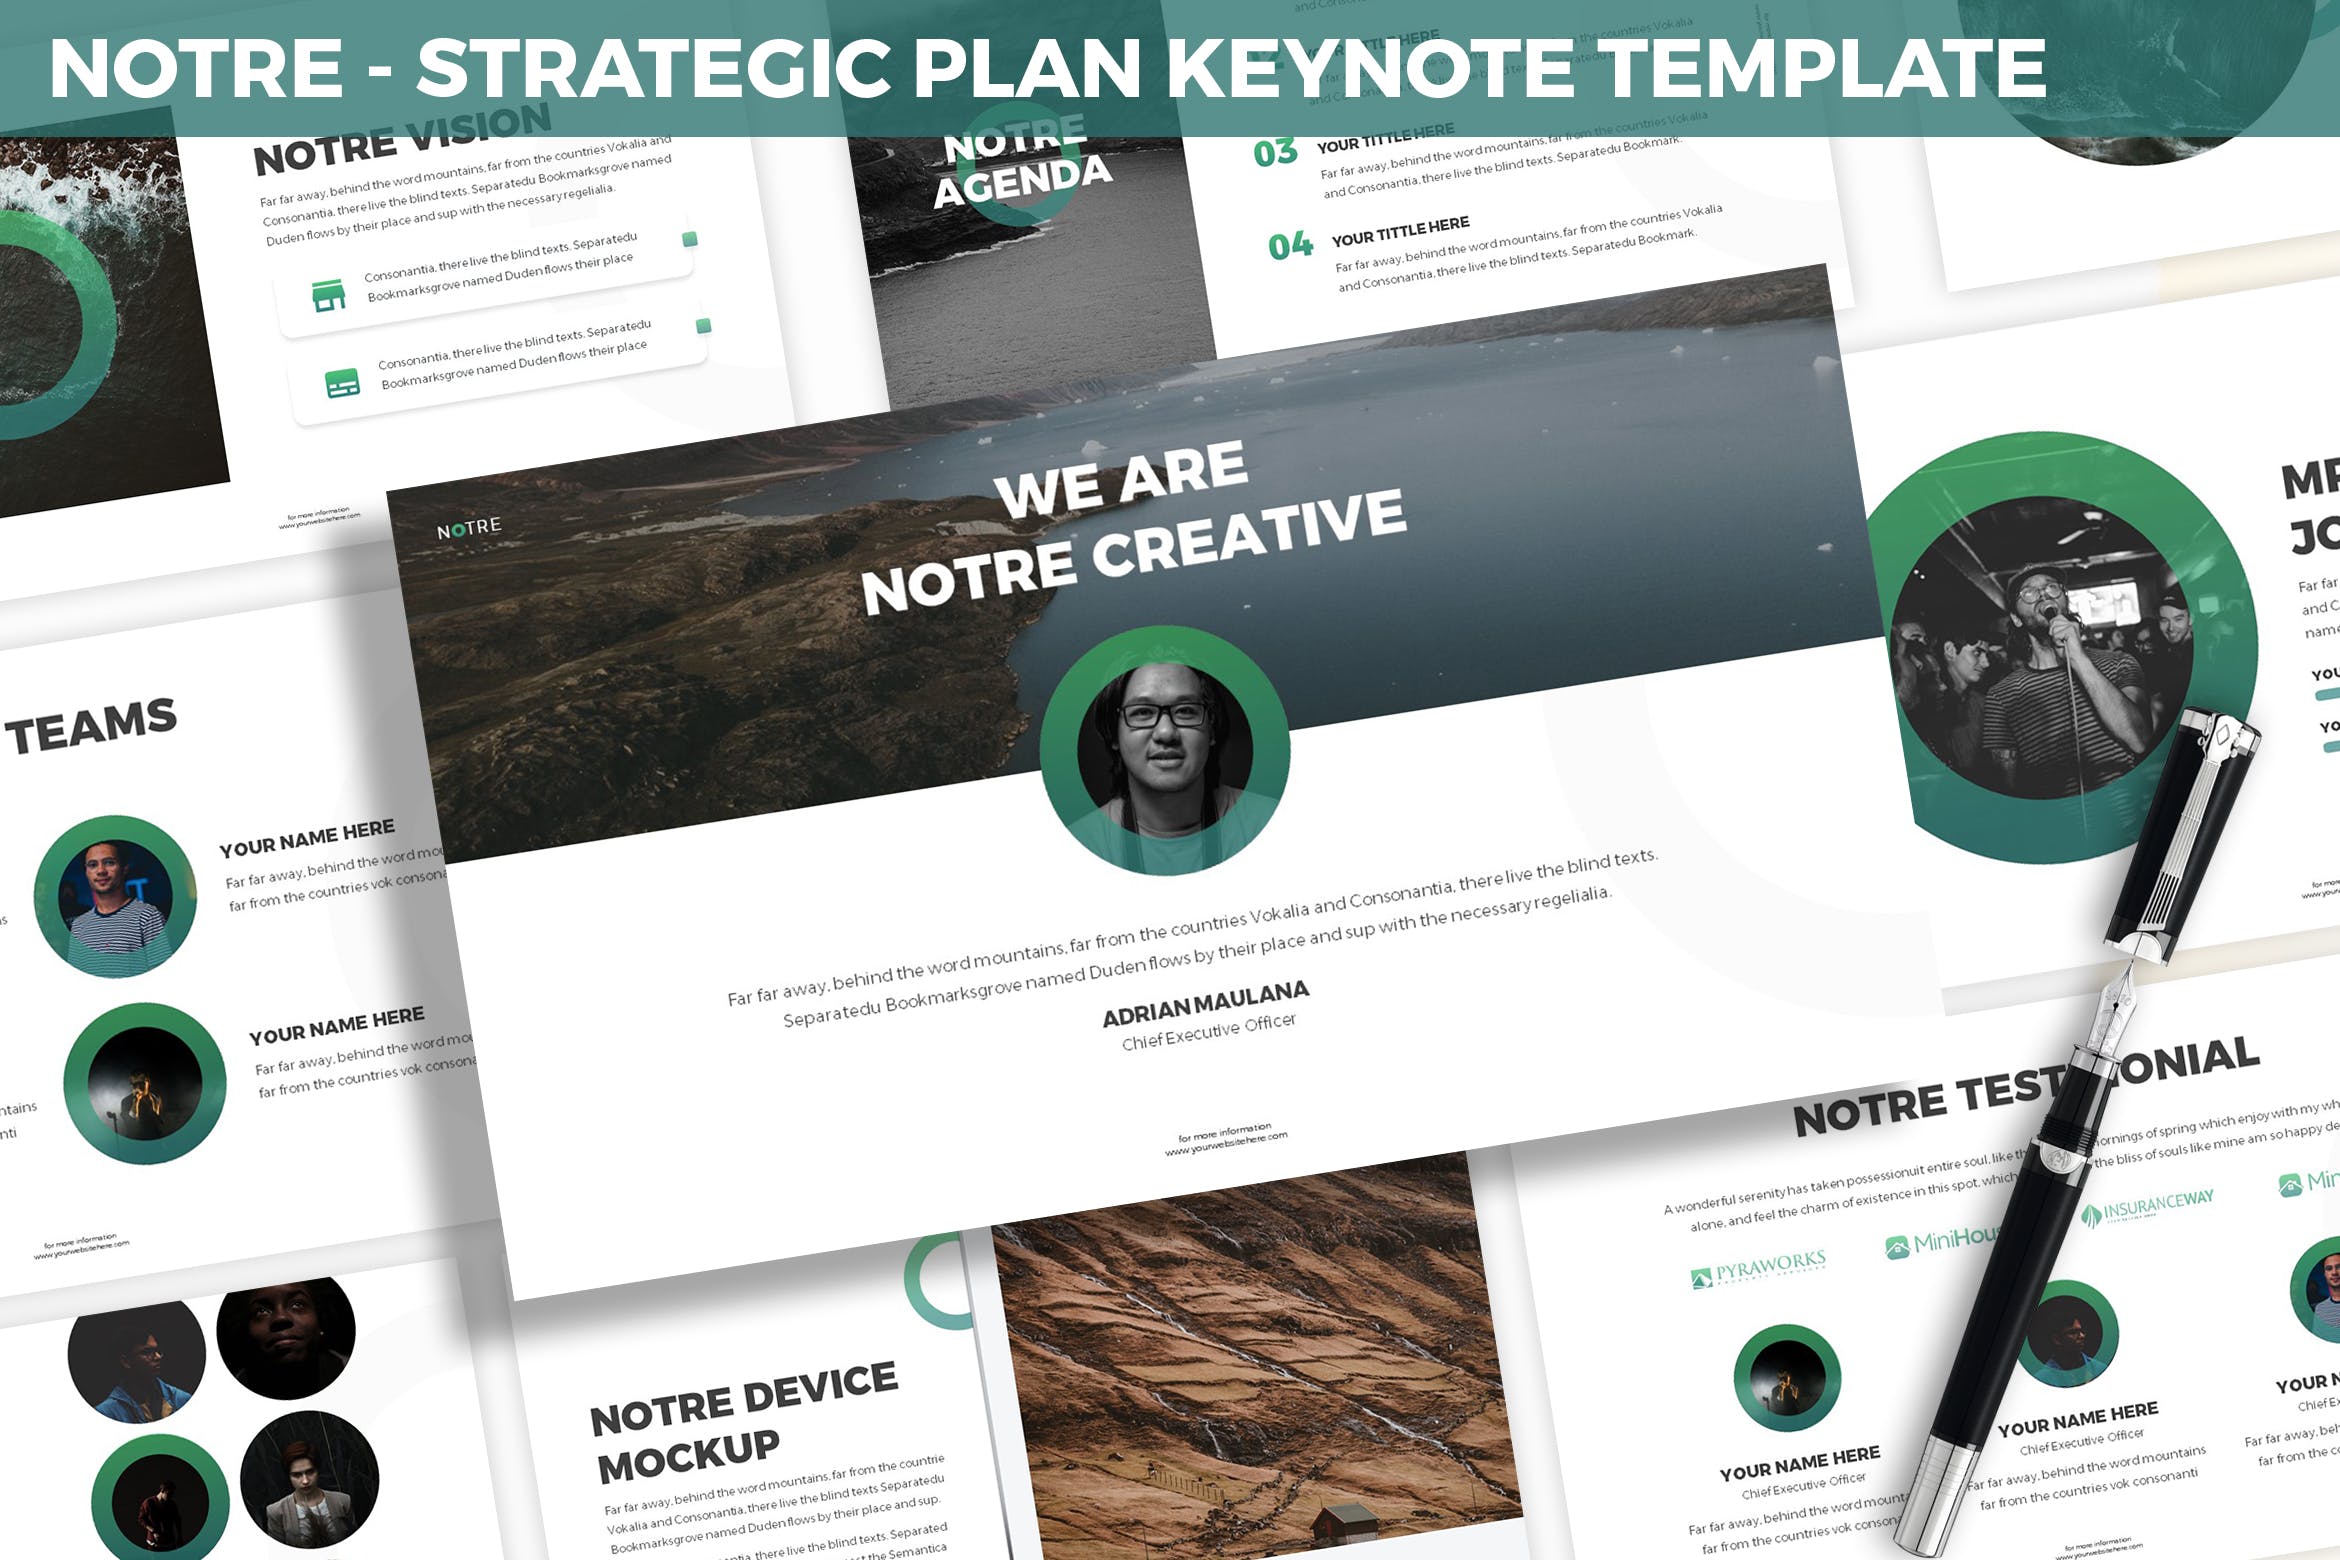 市场规划/项目计划主题素材天下精选Keynote模板模板 Notre – Strategic Plan Keynote Template插图